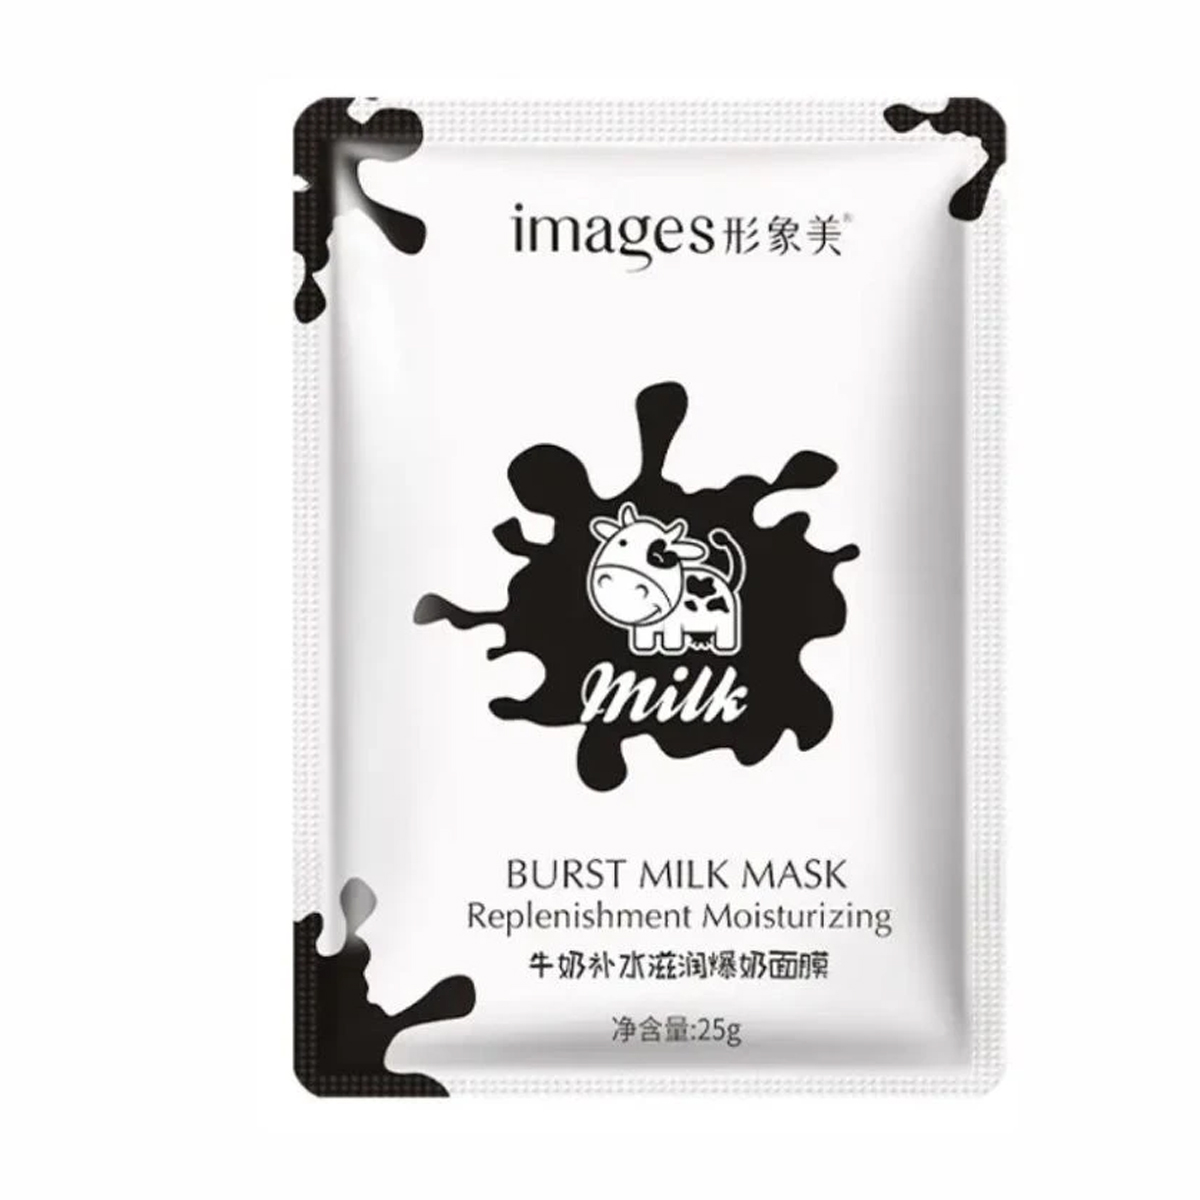 ماسک نقابی مرطوب کننده و شفاف کننده شیر~Burst Milk Mask~IMAGES